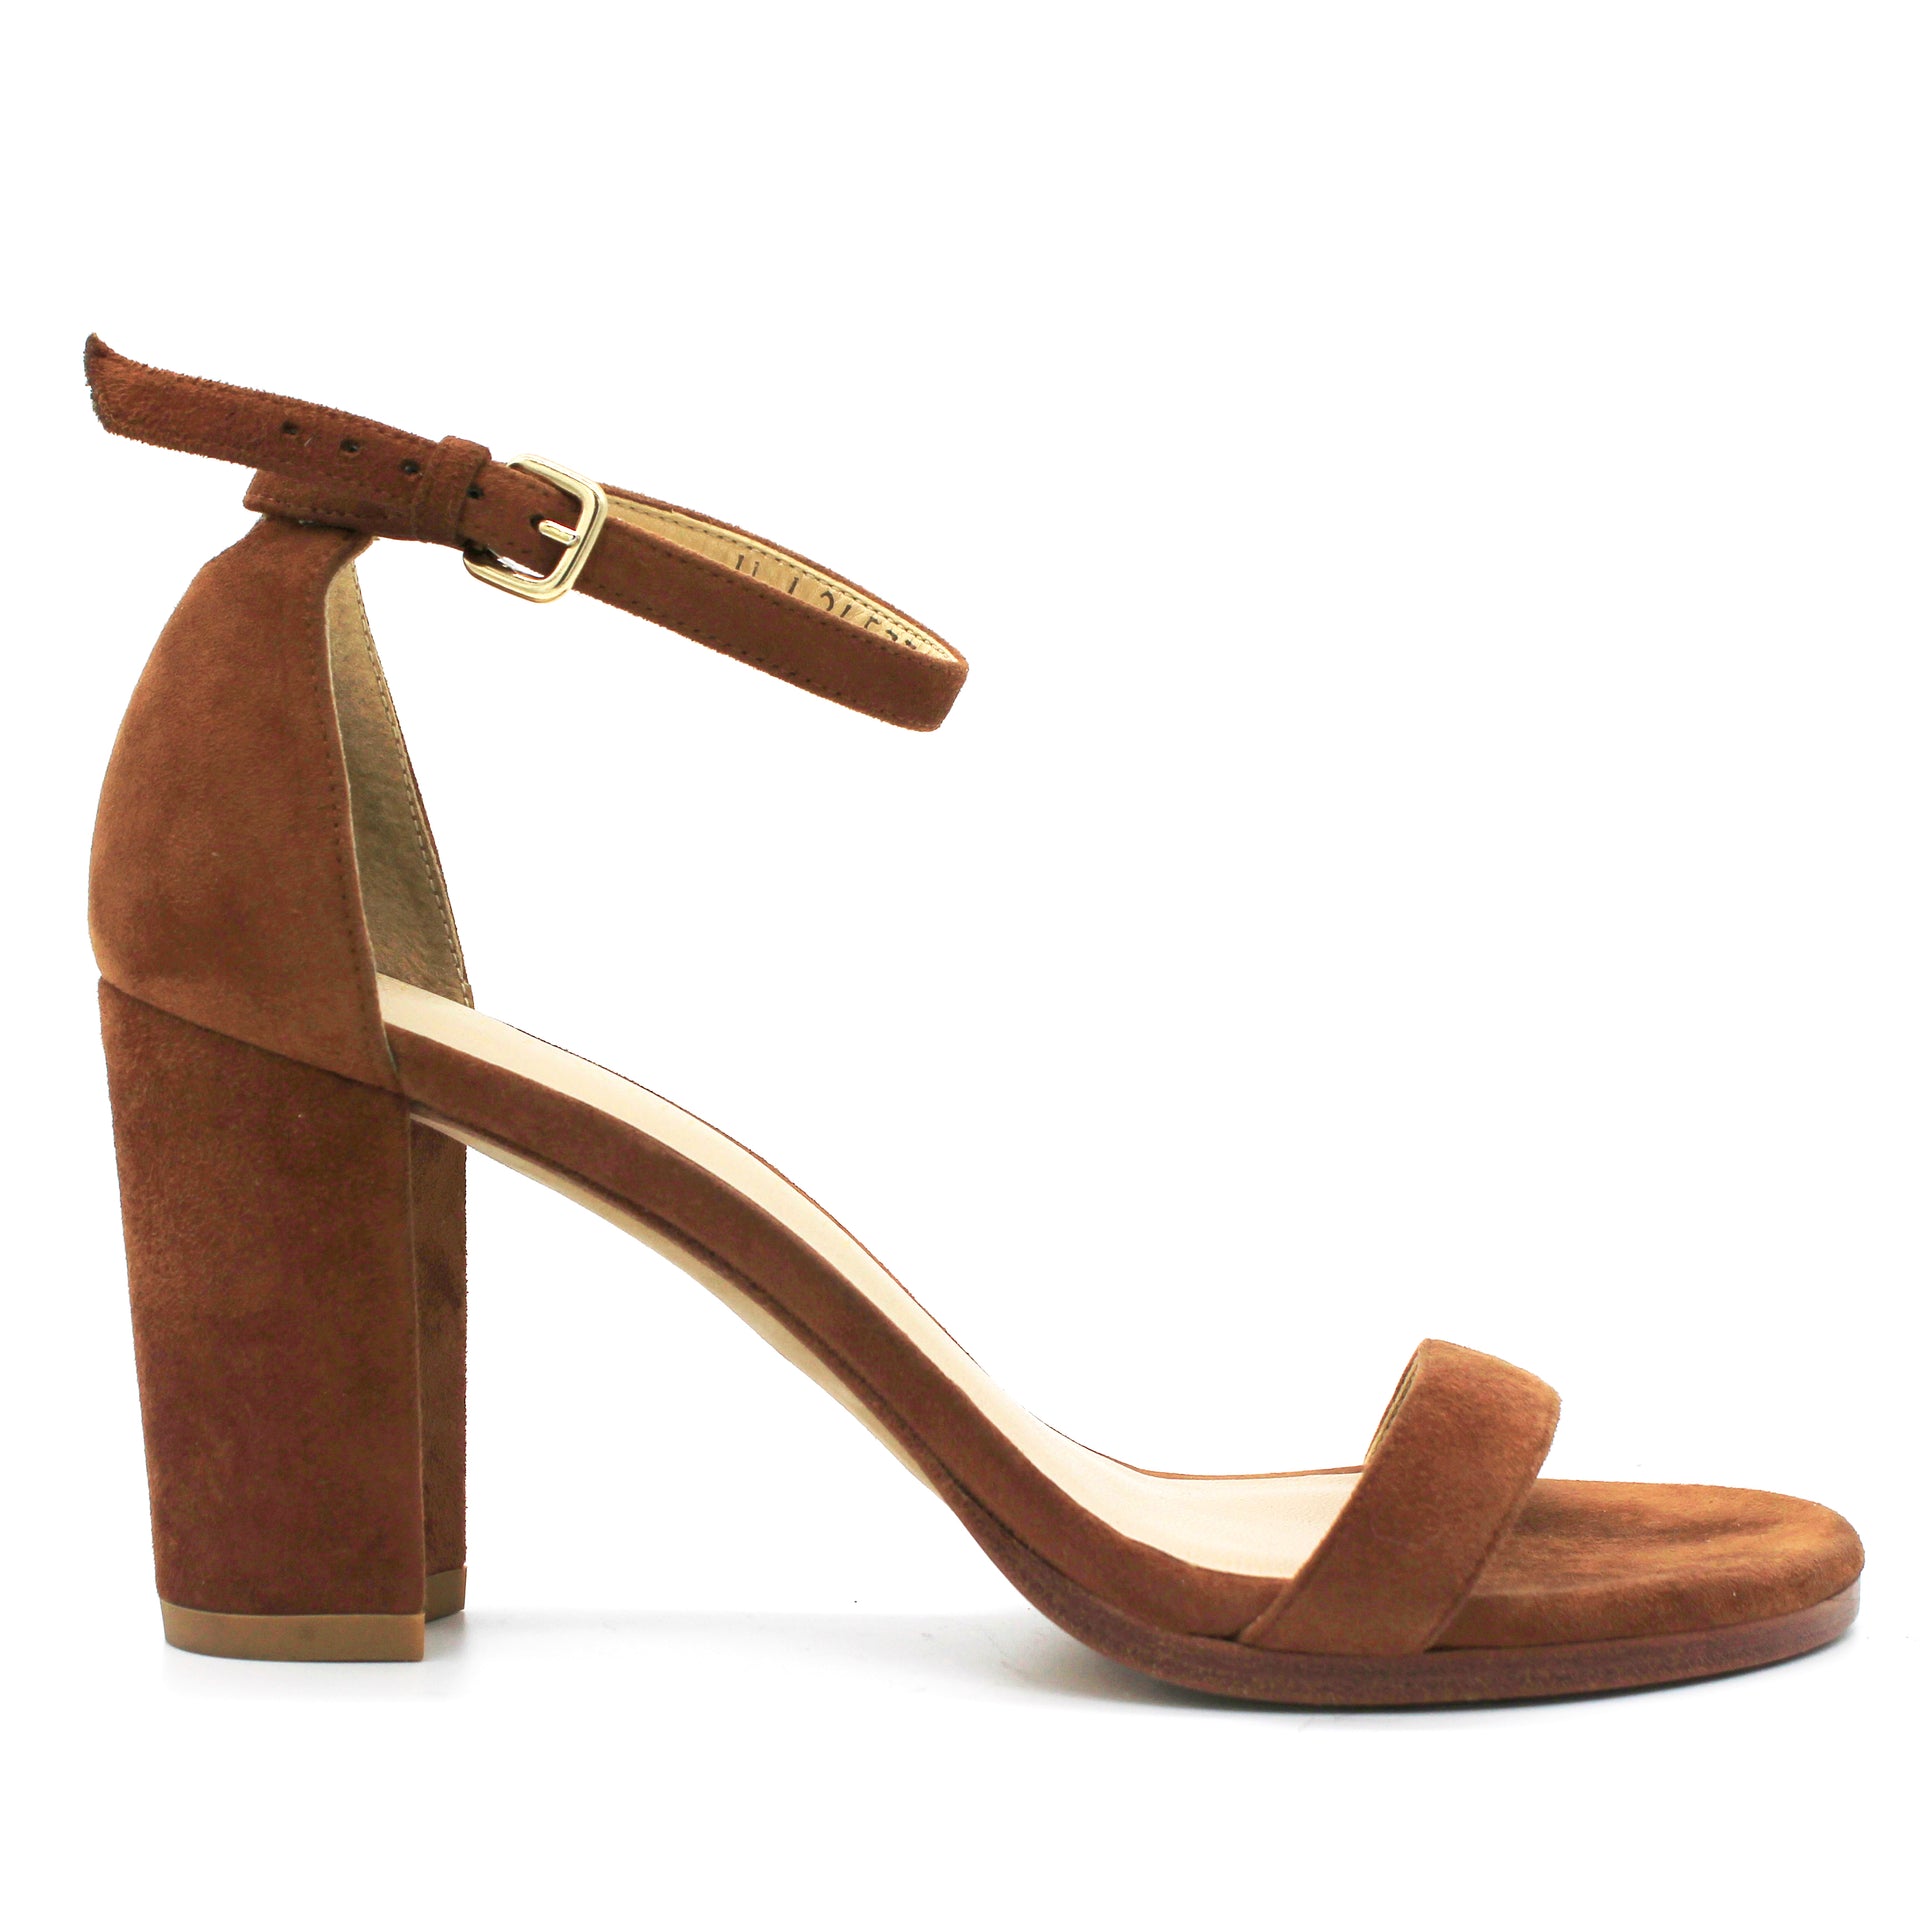 Larlie Block Heel Sandals In Suede - Taupe Tan | NYDJ